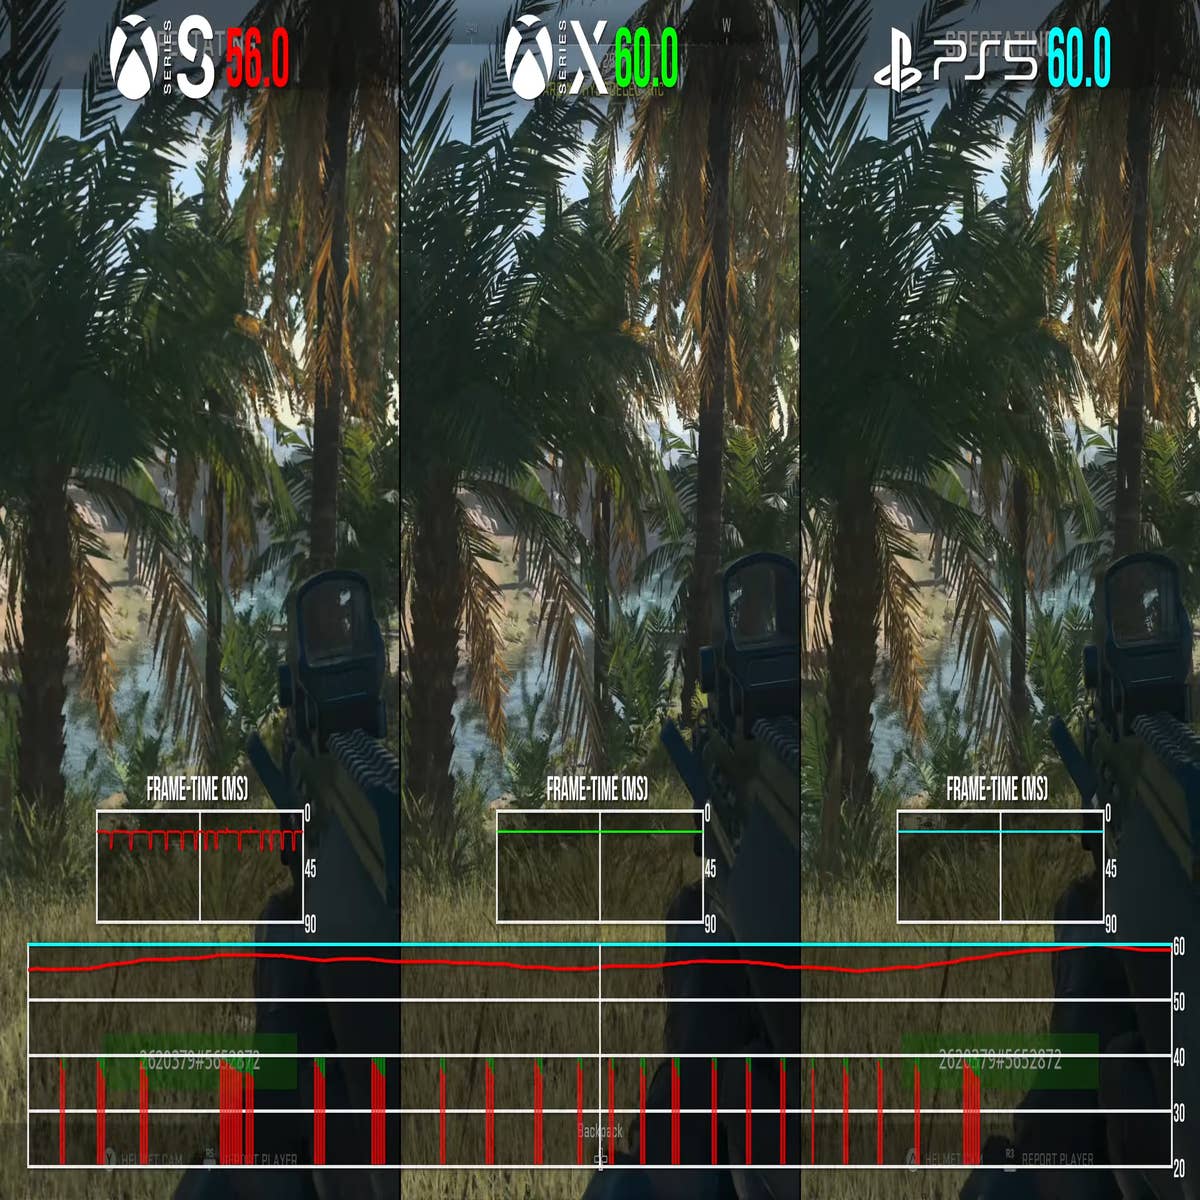 Battlefield 5 - PS4 vs PS5 - Graphics Comparison & FPS Test